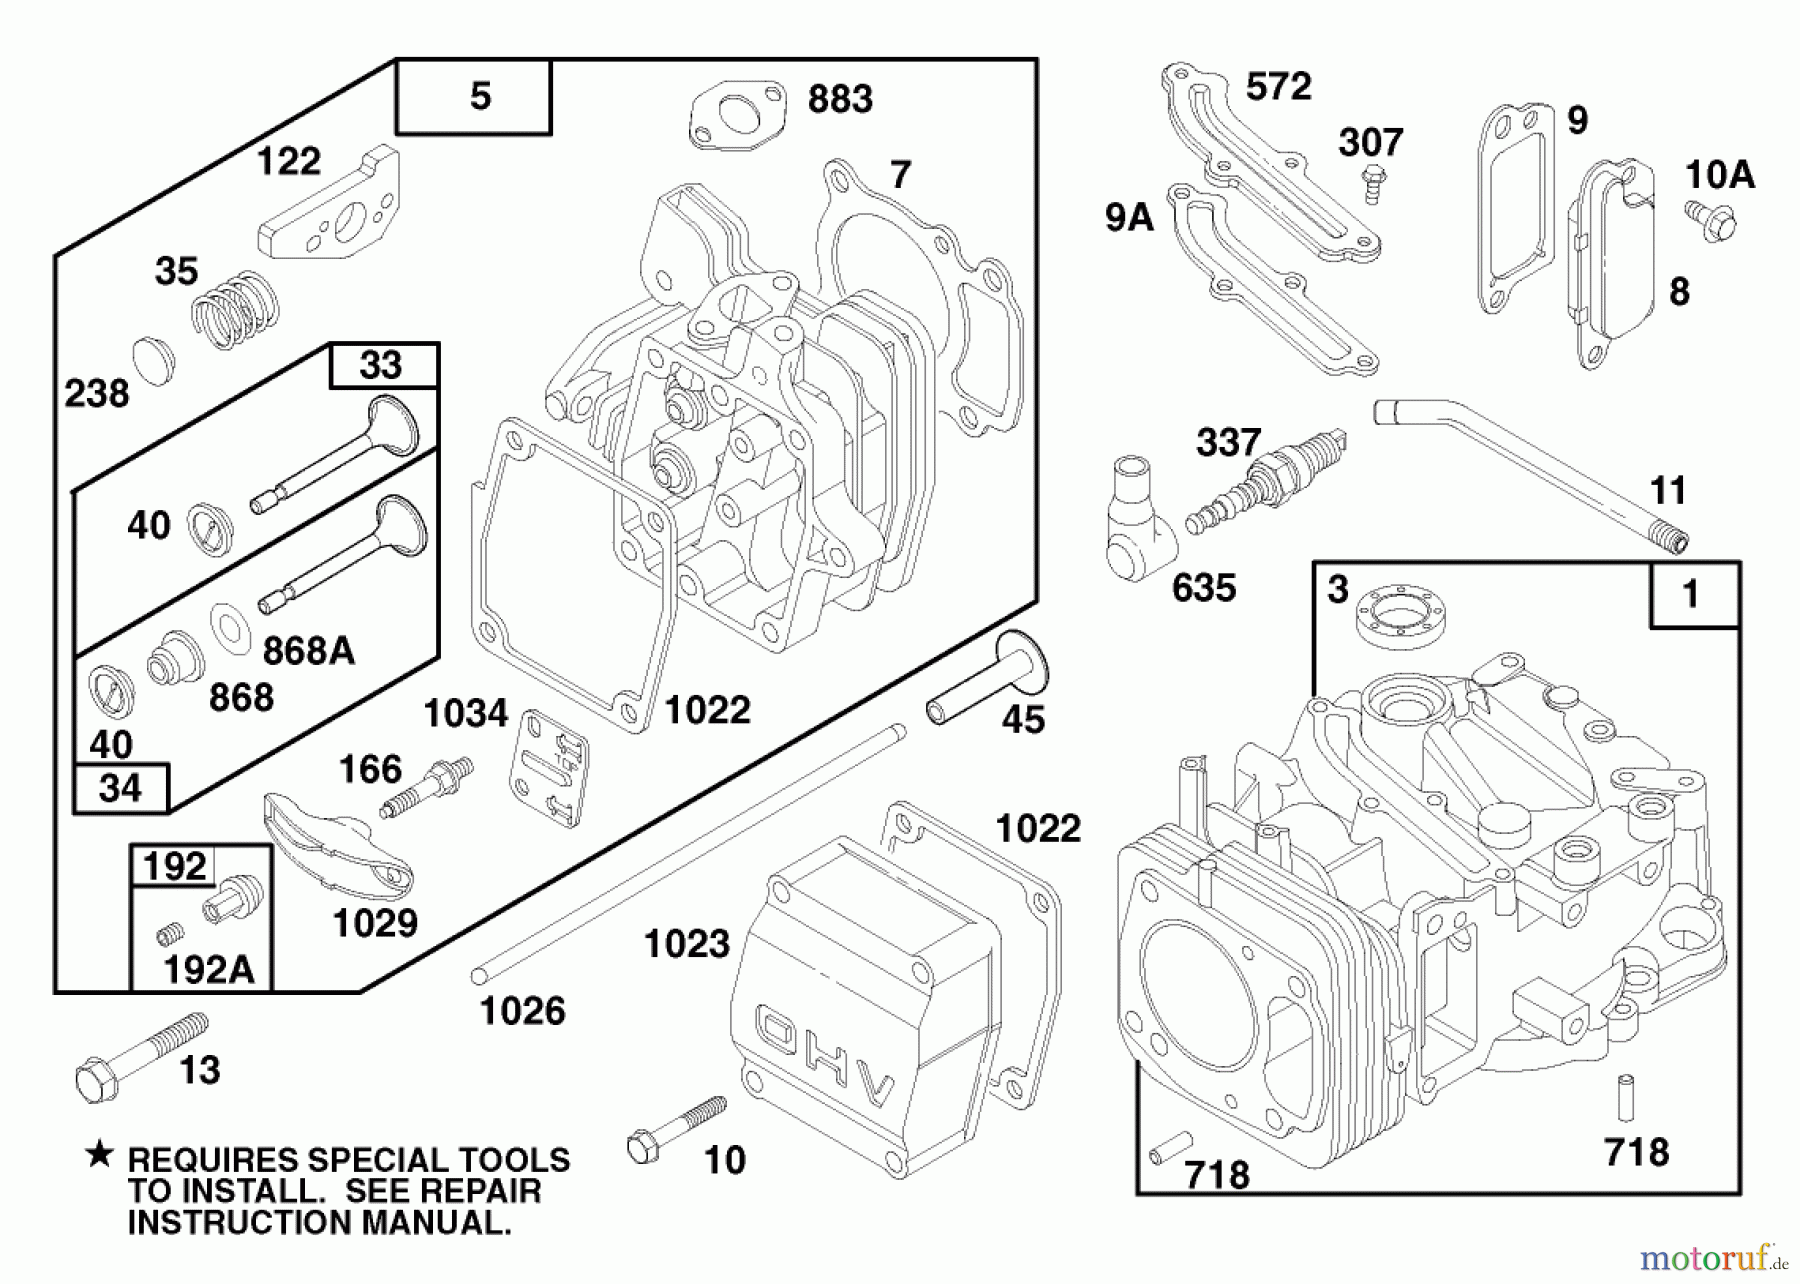  Toro Neu Mowers, Walk-Behind Seite 1 20475 - Toro Lawnmower, 1996 (6900001-6999999) ENGINE GTS 150 (MODEL NO. 20475 ONLY) #1